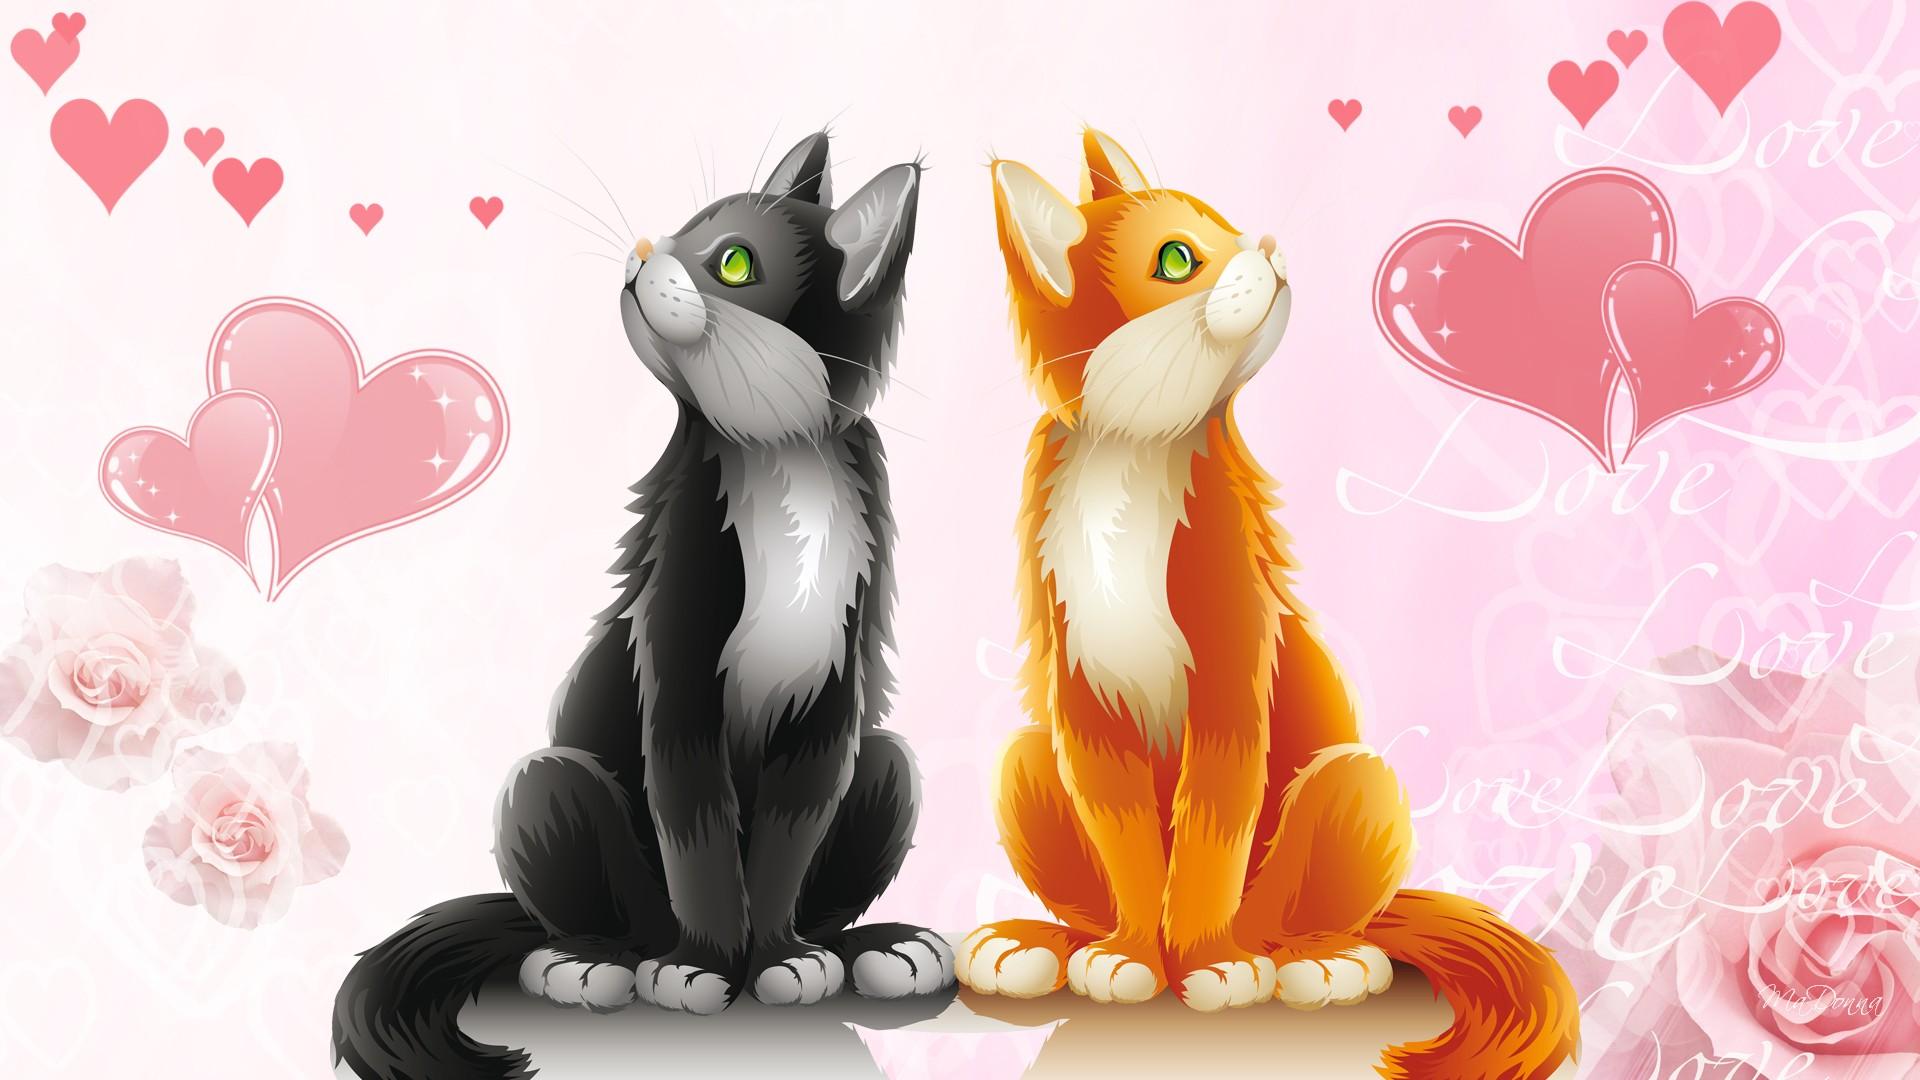 Cat Valentine Background for Desktop. Valentine Wallpaper, Victorian Valentine Wallpaper and Dogs Valentine Wallpaper